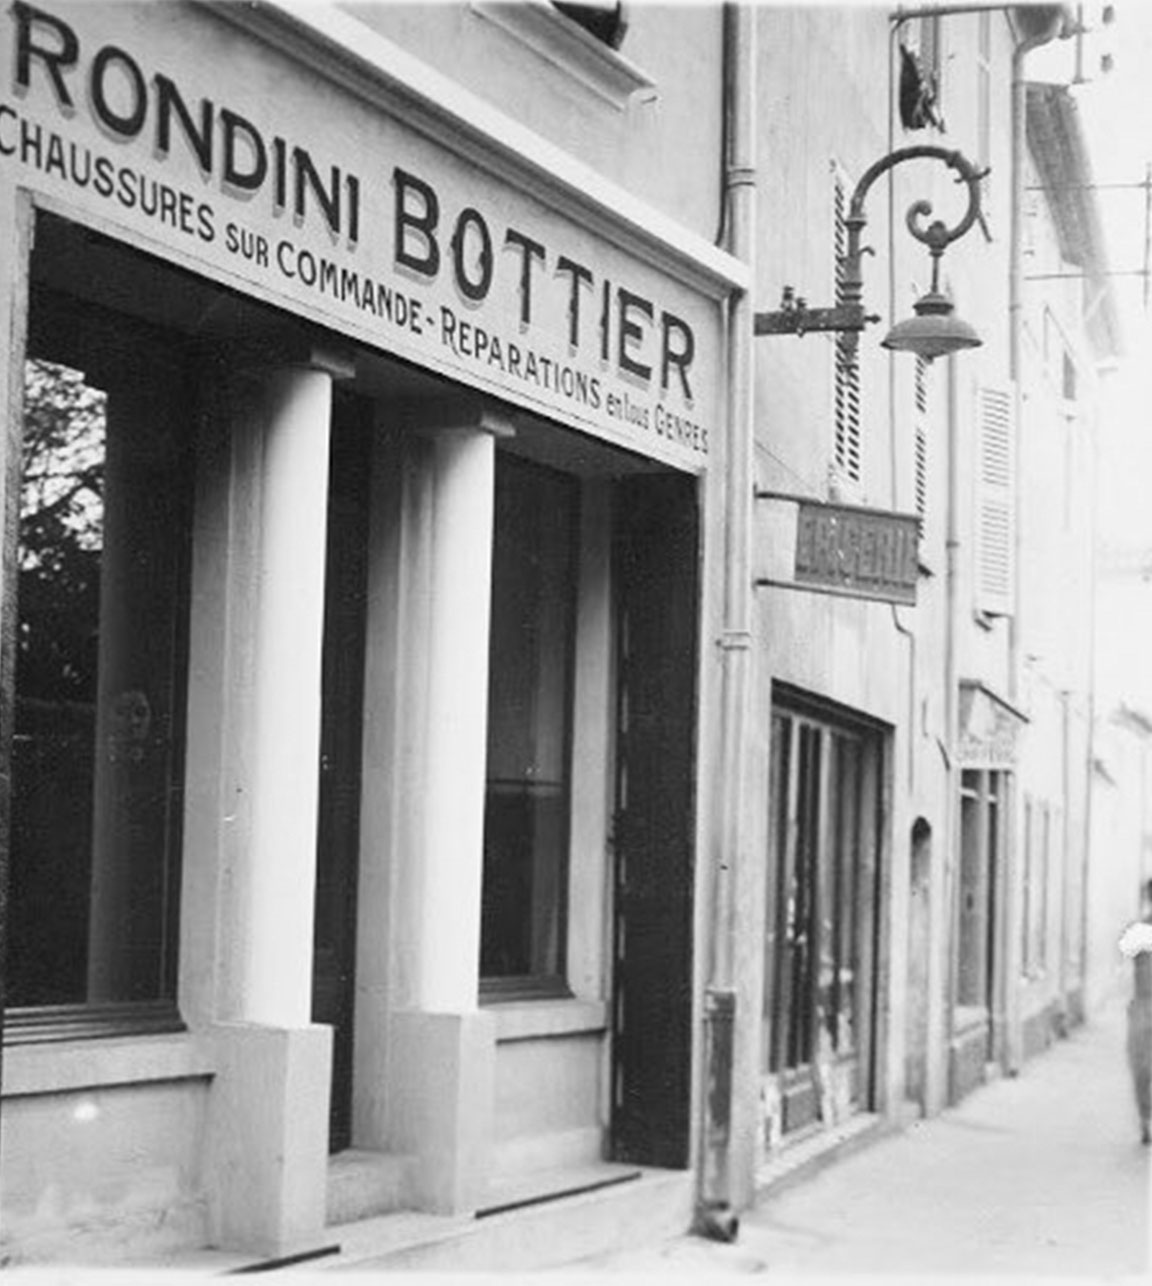 L'atelier Rondini - Histoire des Tropéziennes